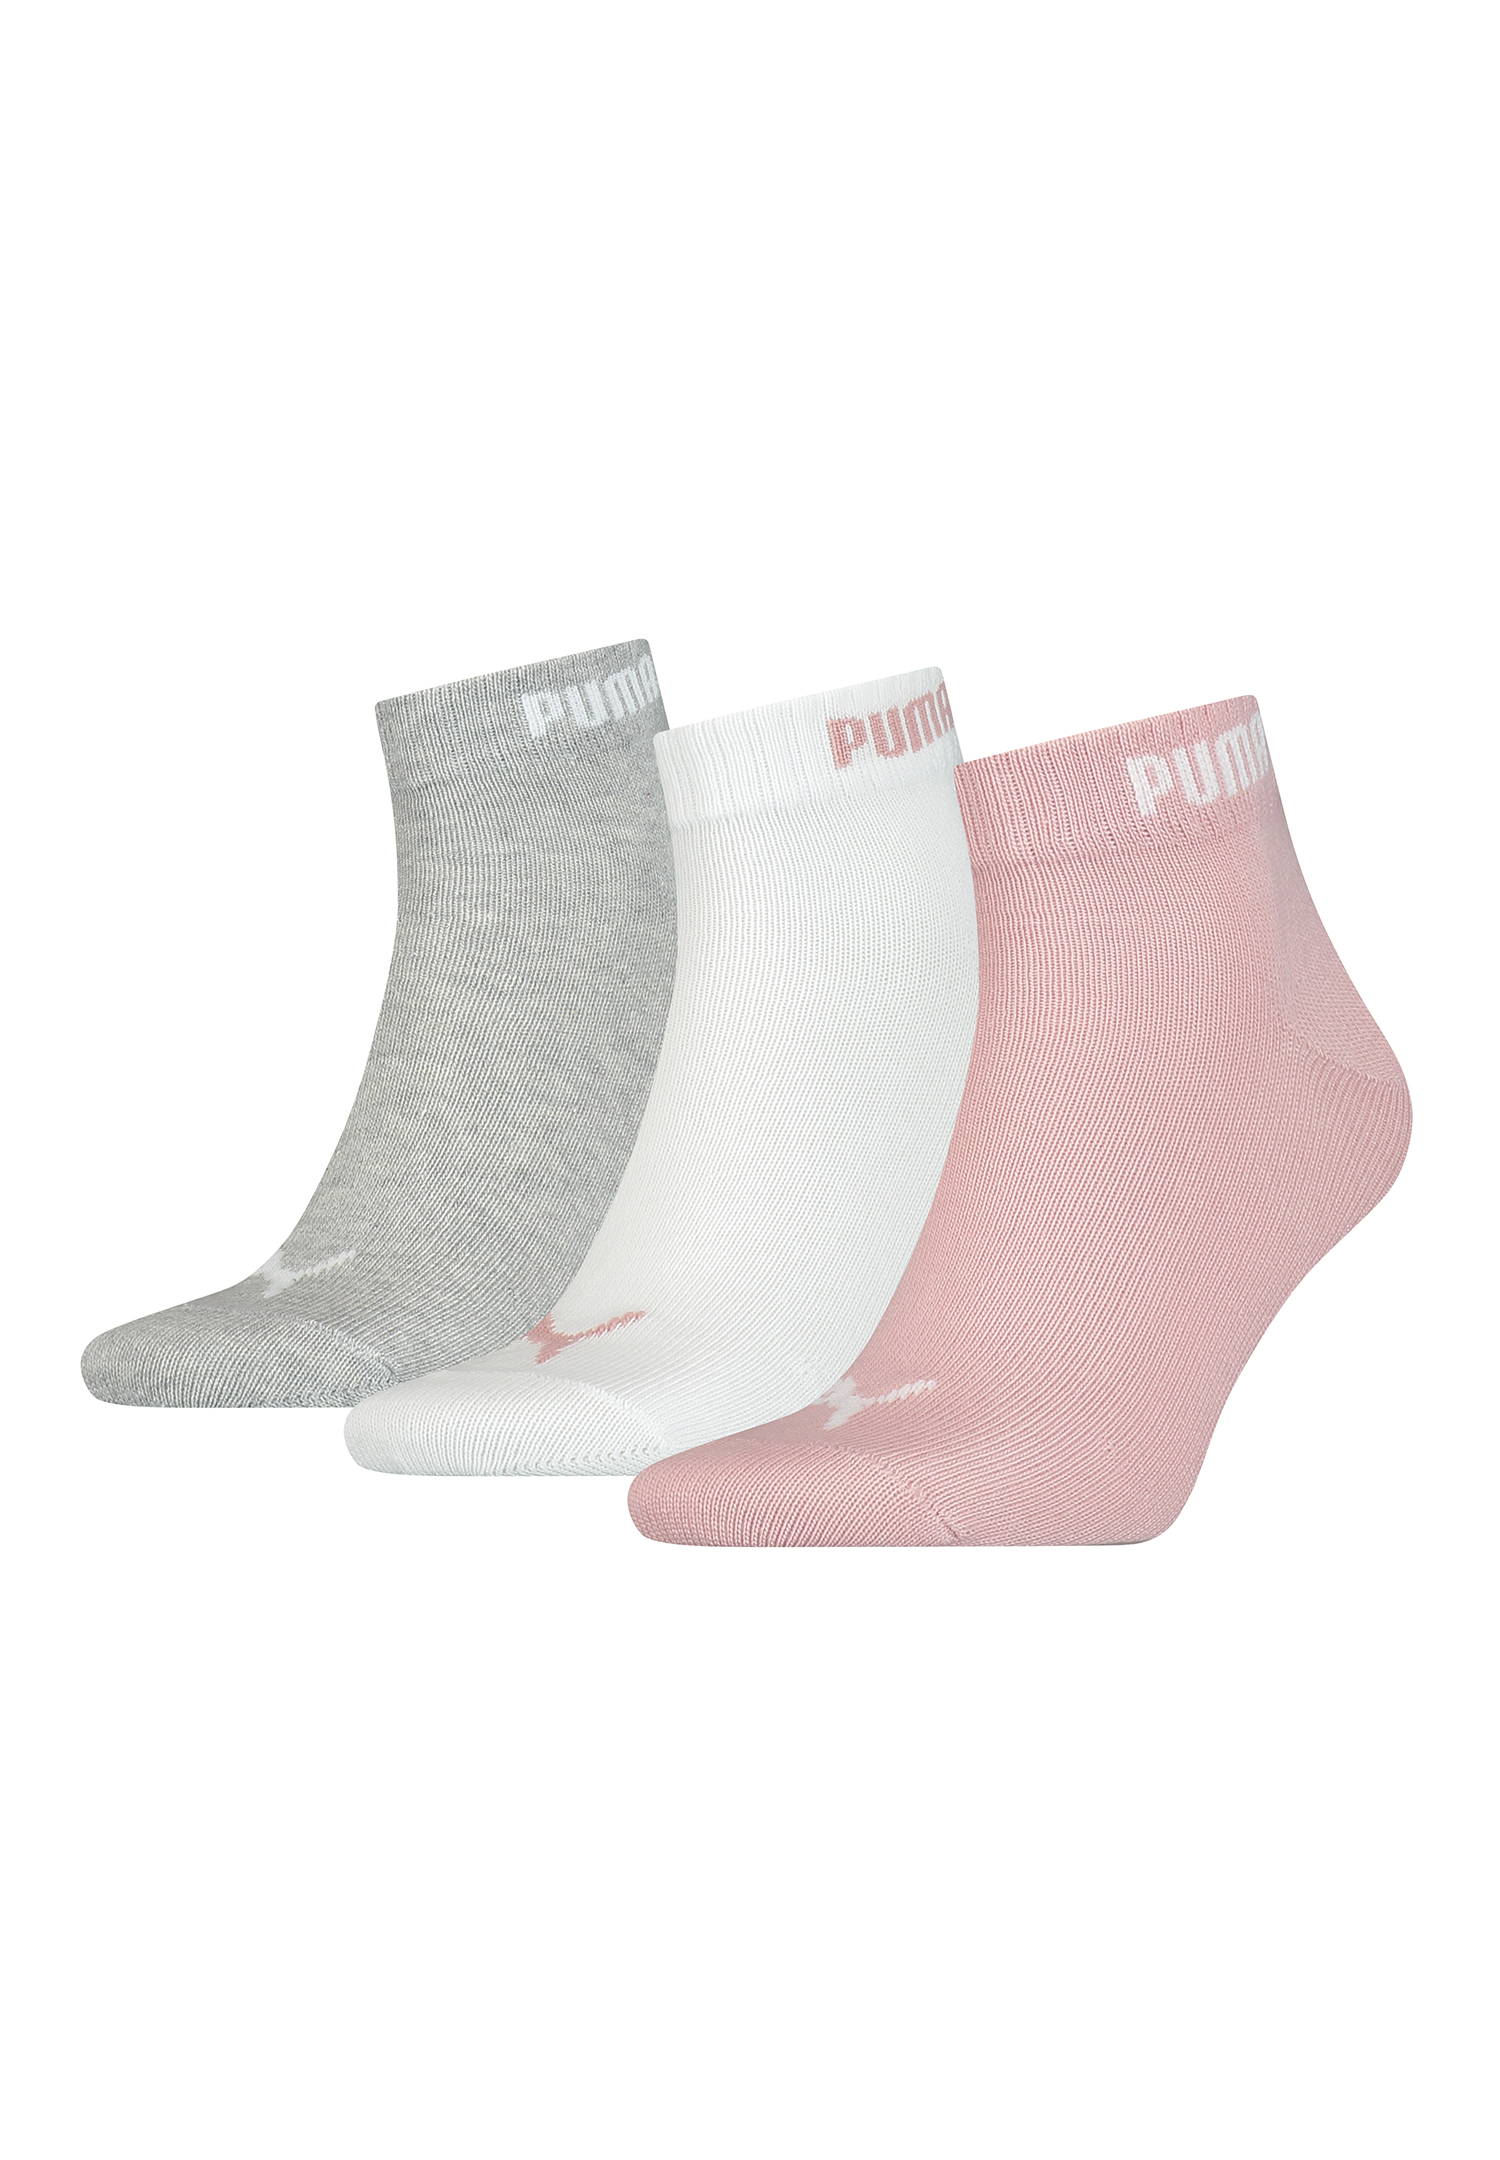 Puma Unisex Quarter Socken Sneaker im Retro Design knöchelhoch für Damen Herren 3er Pack